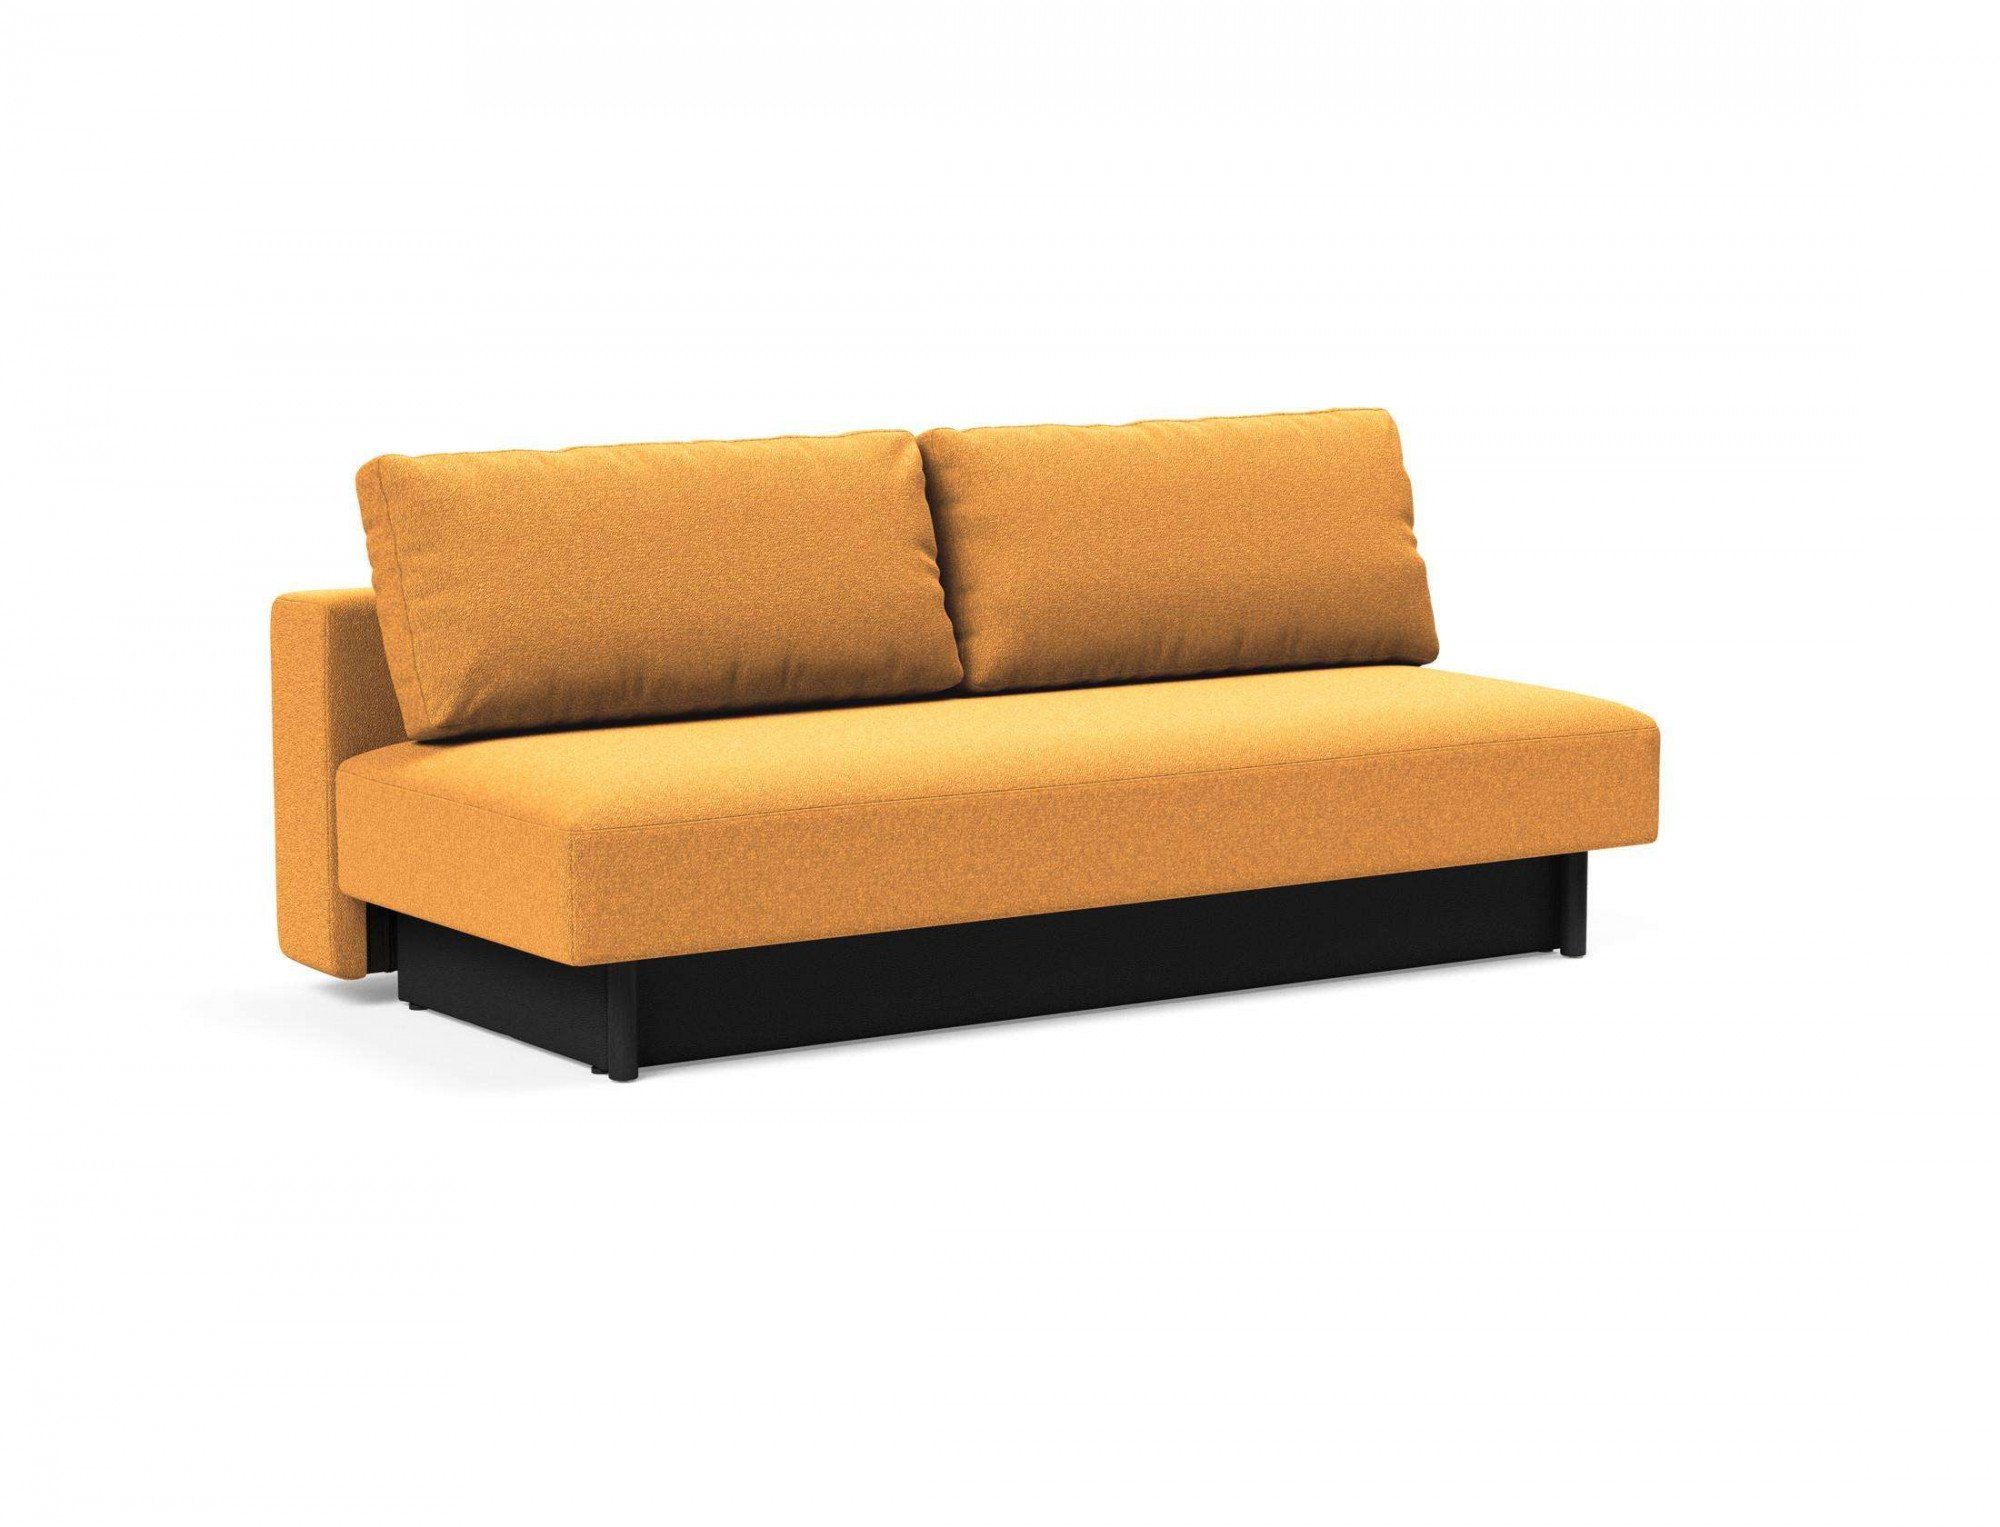 INNOVATION LIVING ™ 3-Sitzer Merga Stellfläche Design, wenig Bettkasten,minimalistischem Schlafsofa, bedarf großem